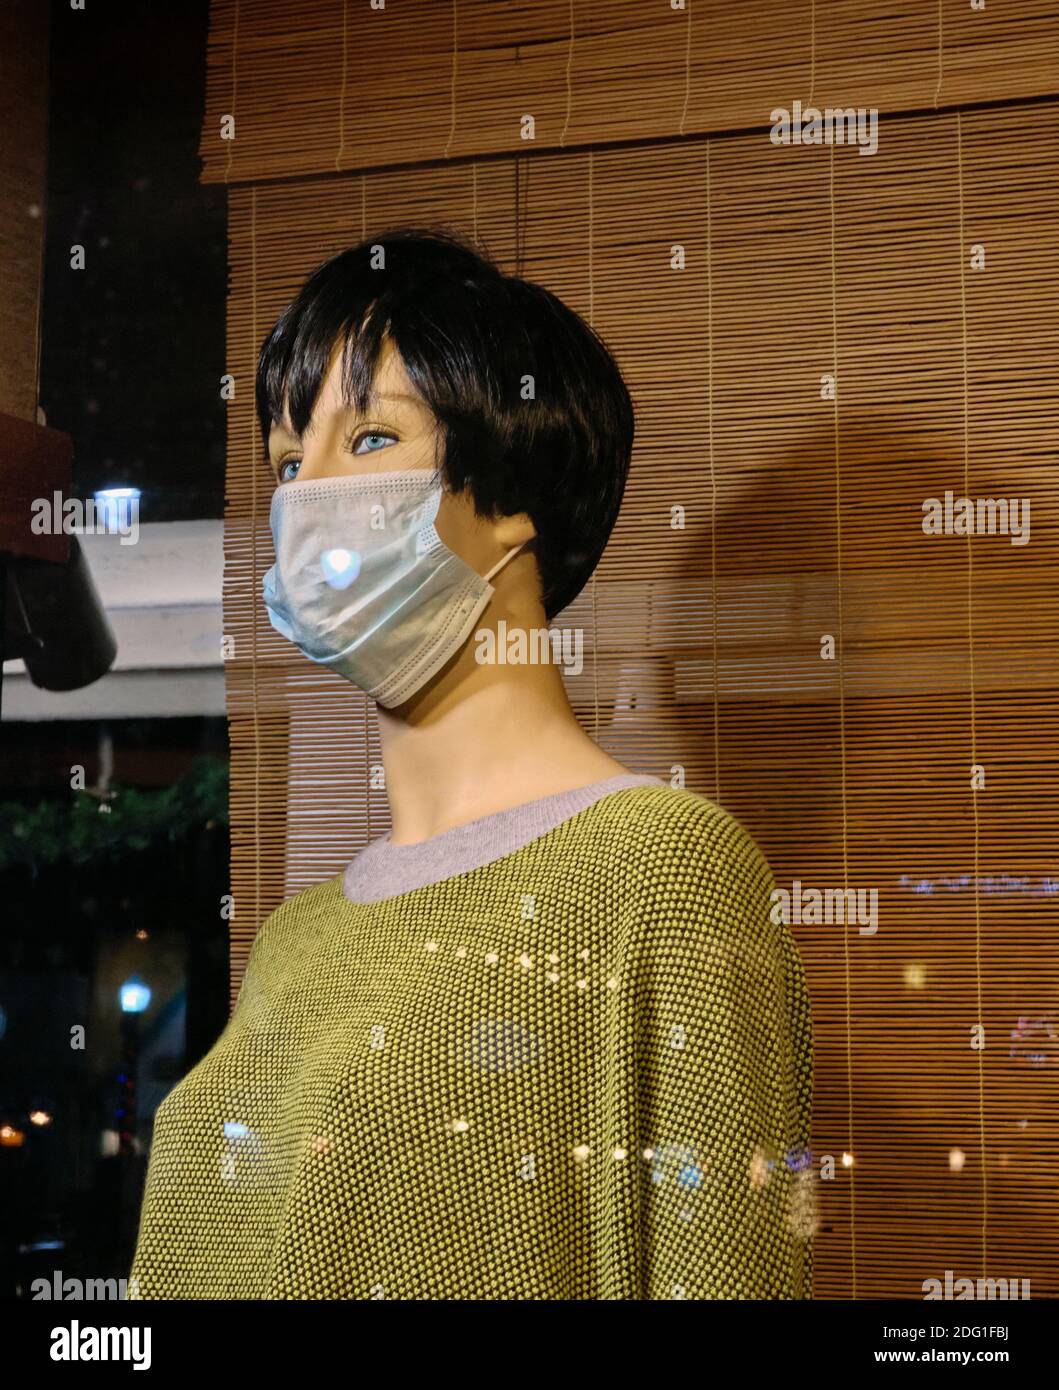 Eine Schaufensterpuppe trägt eine grüne Bluse und Gesichtsmaske während der COVID-19 Coronavirus Pandemie von 2020. Stockfoto